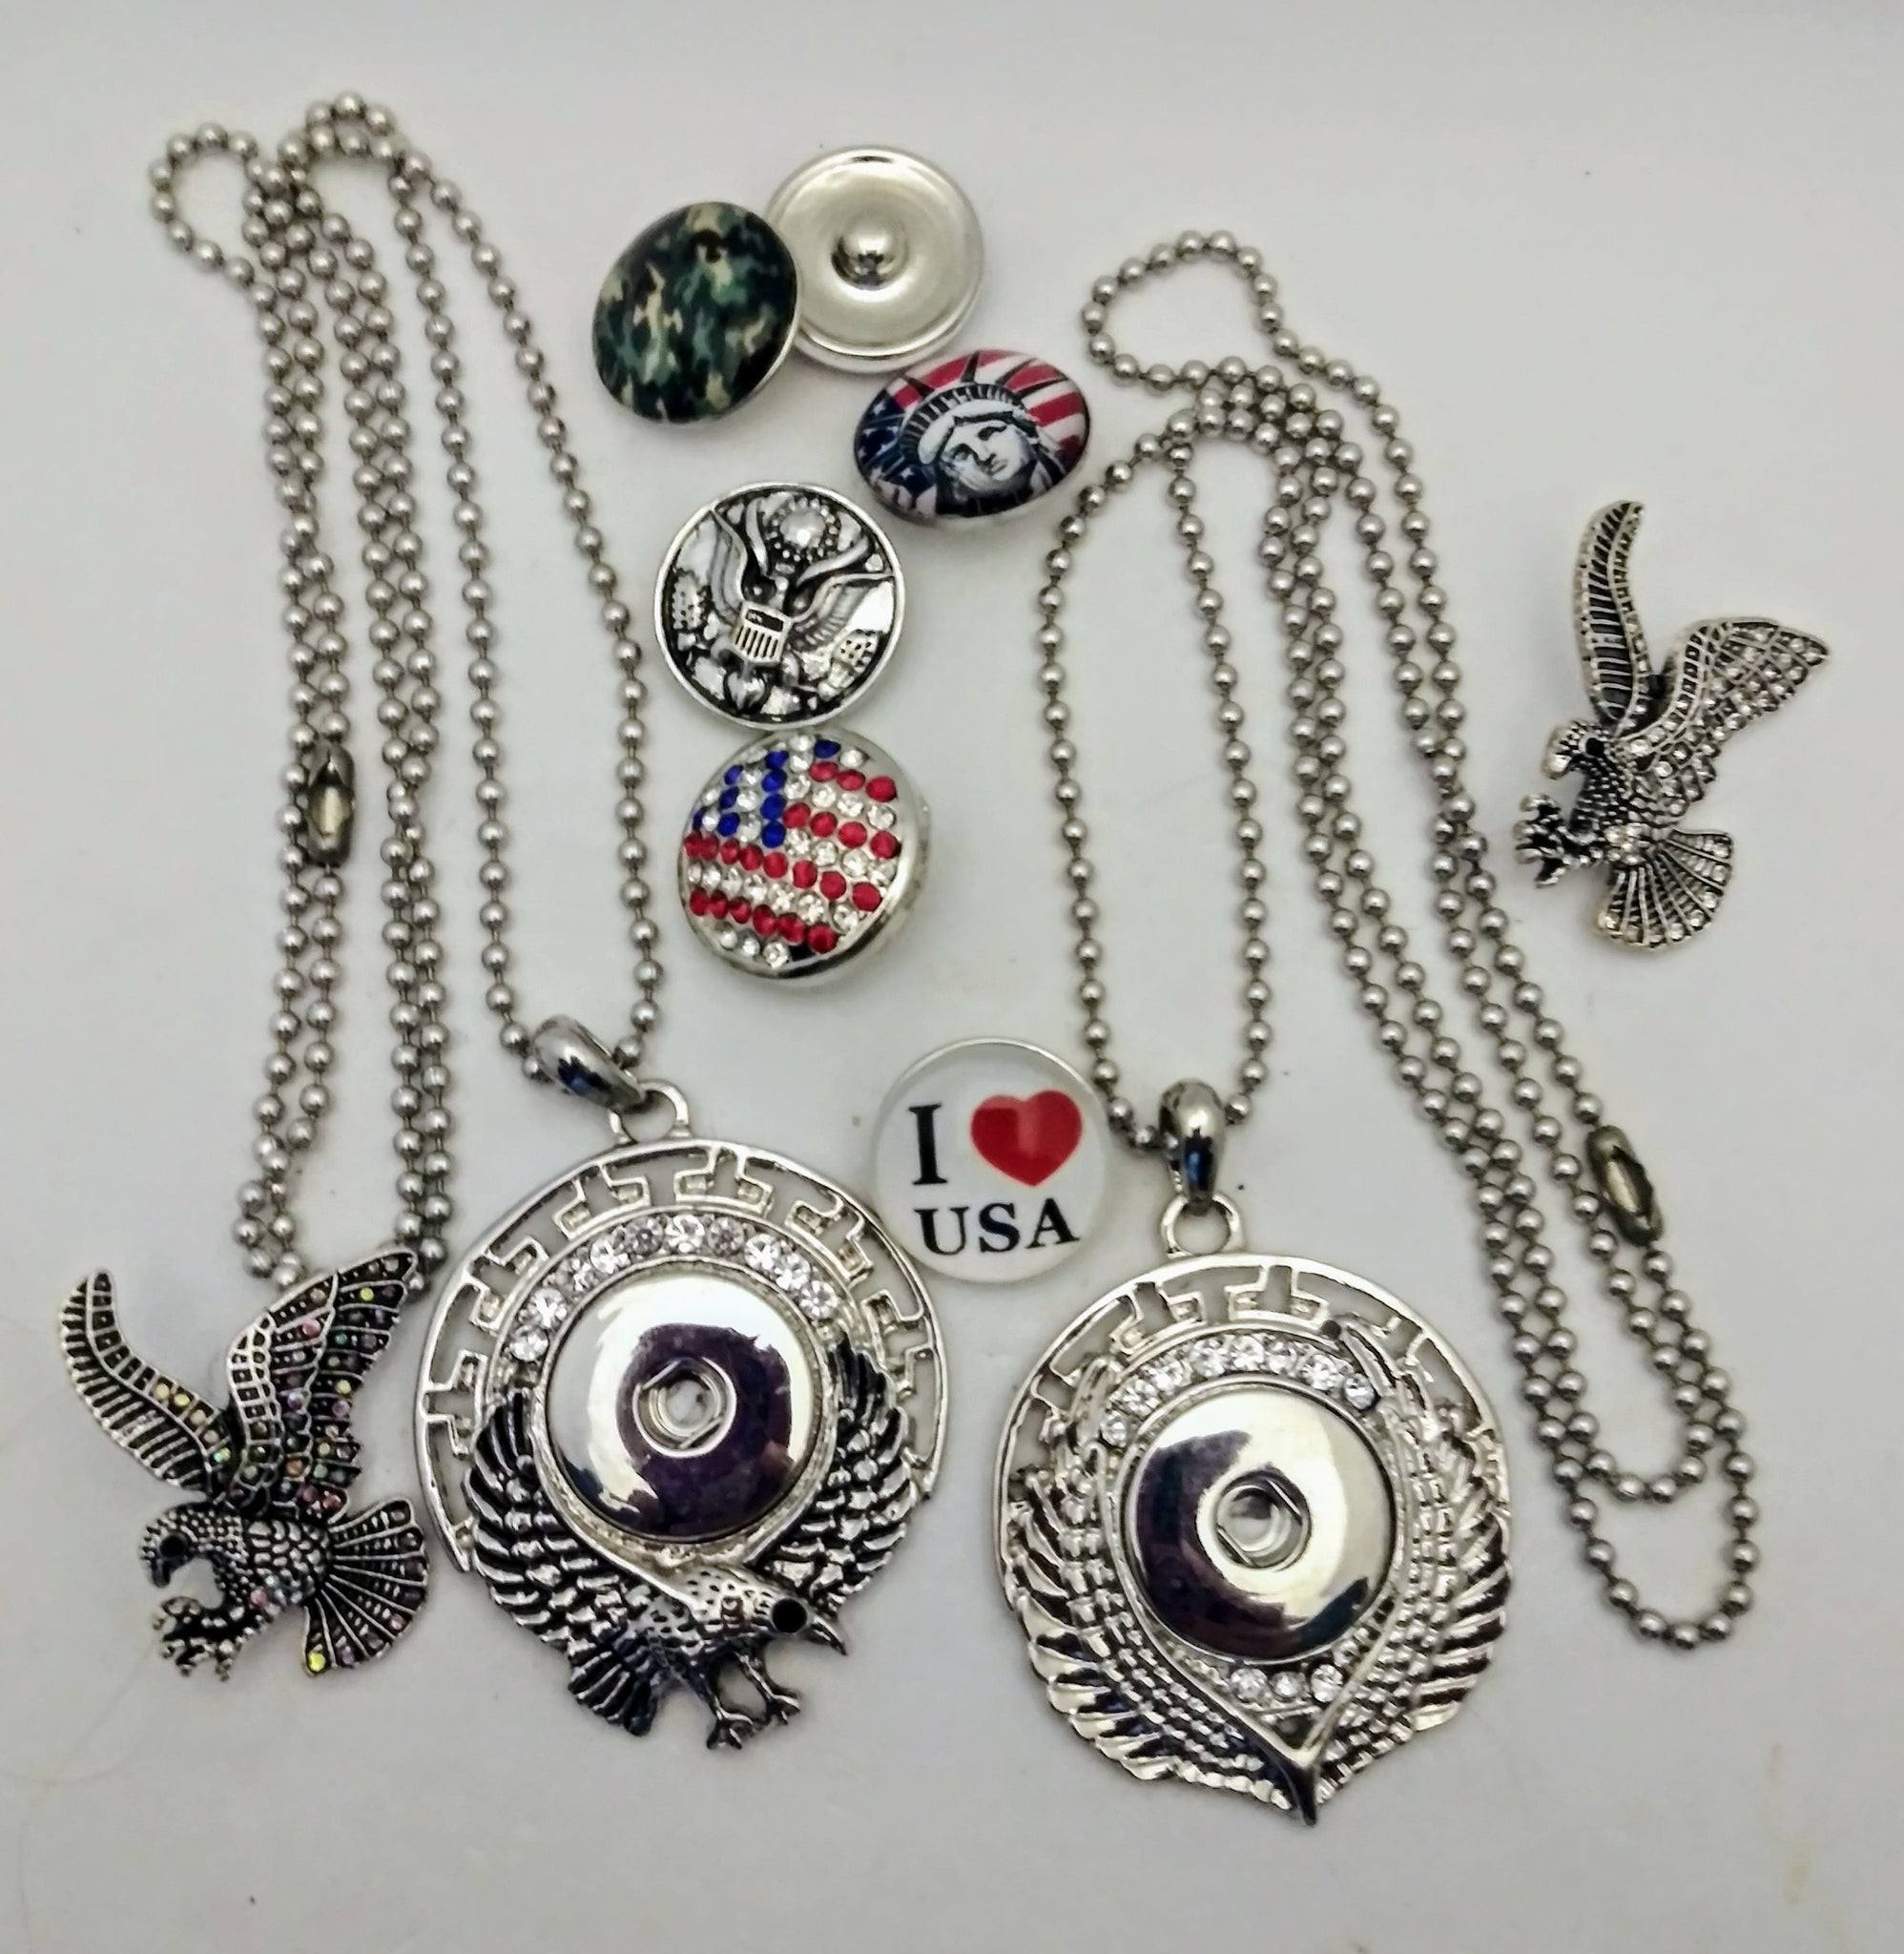 USA pendants and snaps